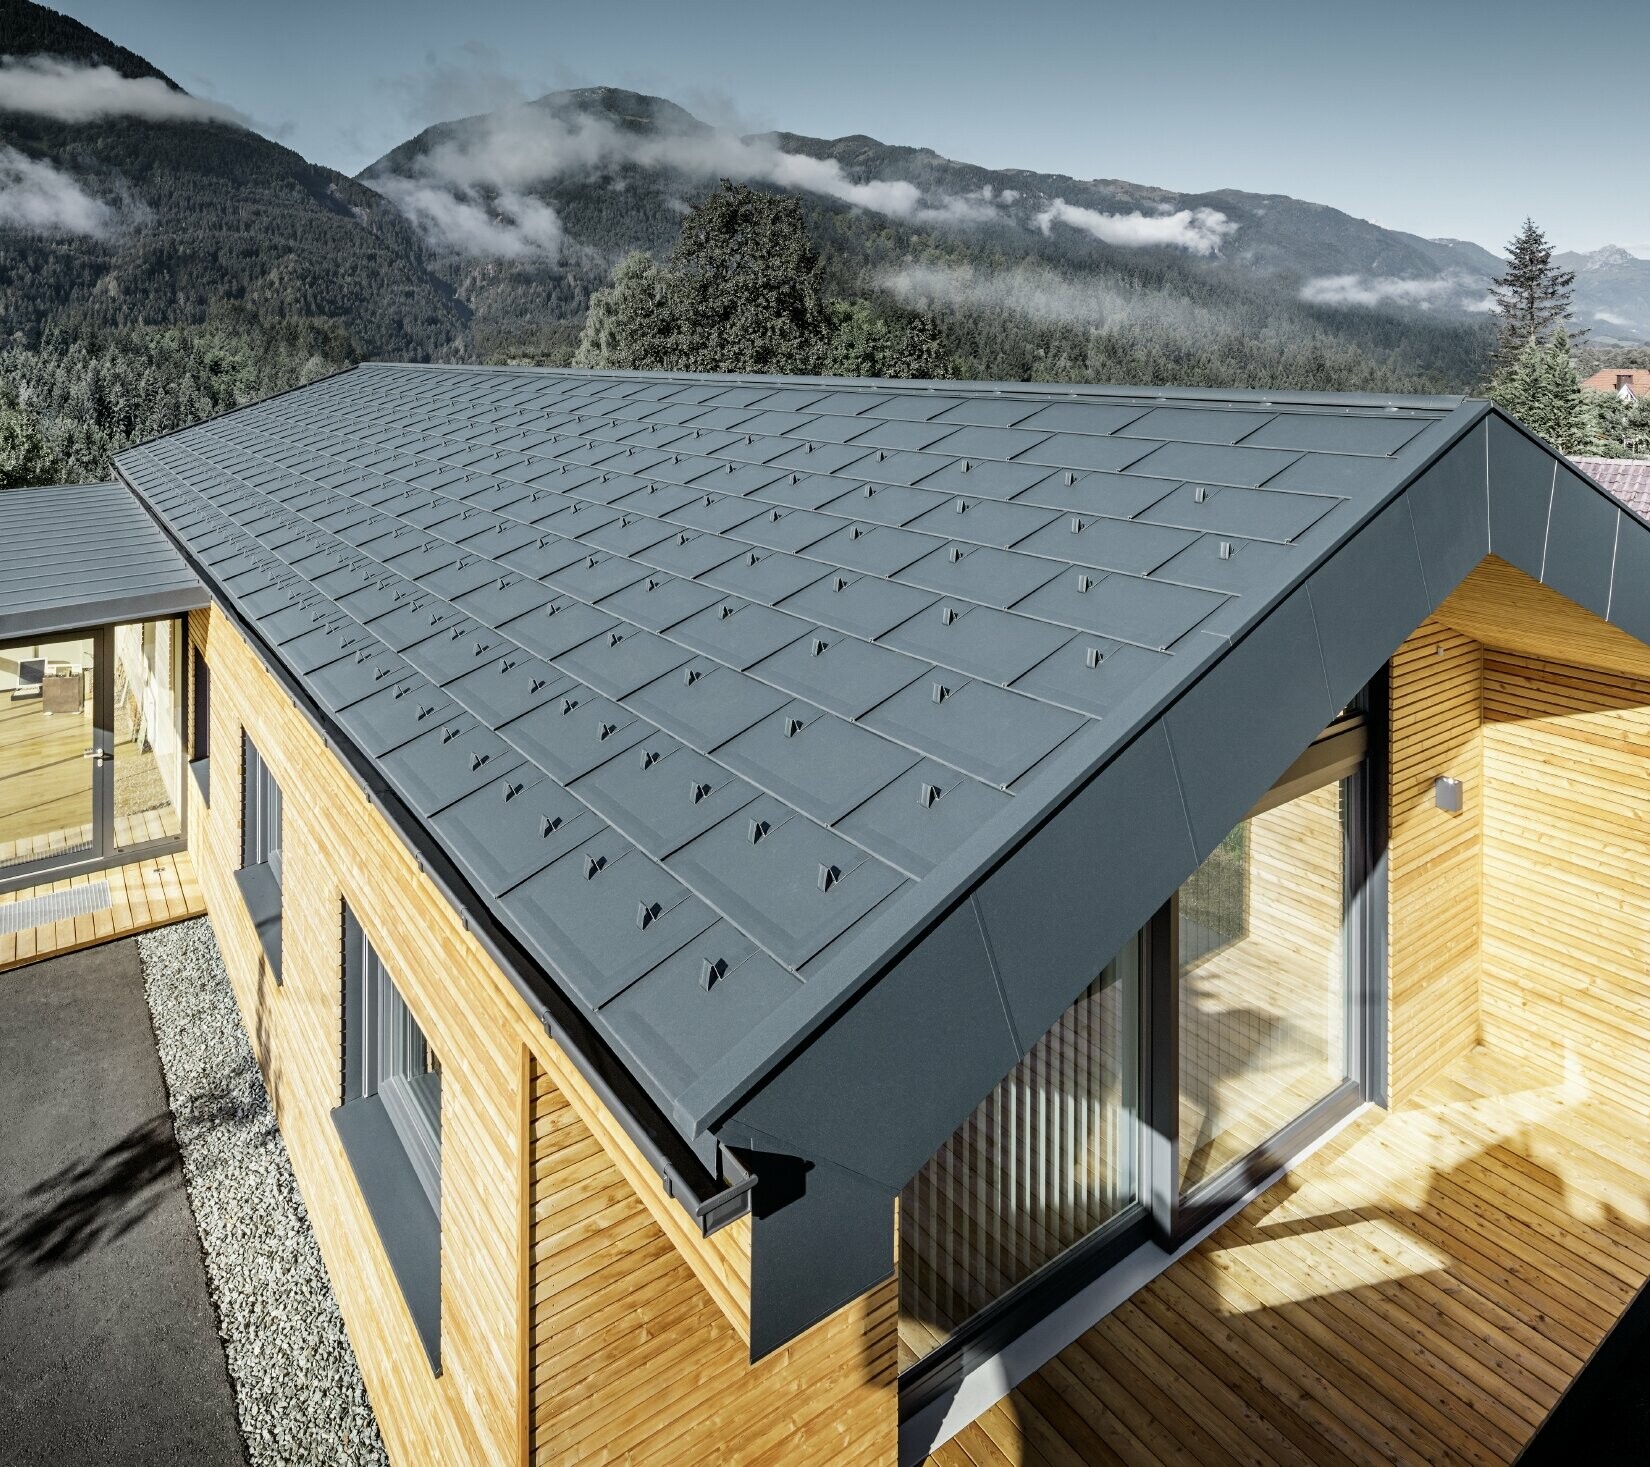 Nieuw kantoorgebouw van Holzbau Faltheiner met gevel van larikshout, royale raampartijen en een PREFA dak in antraciet.